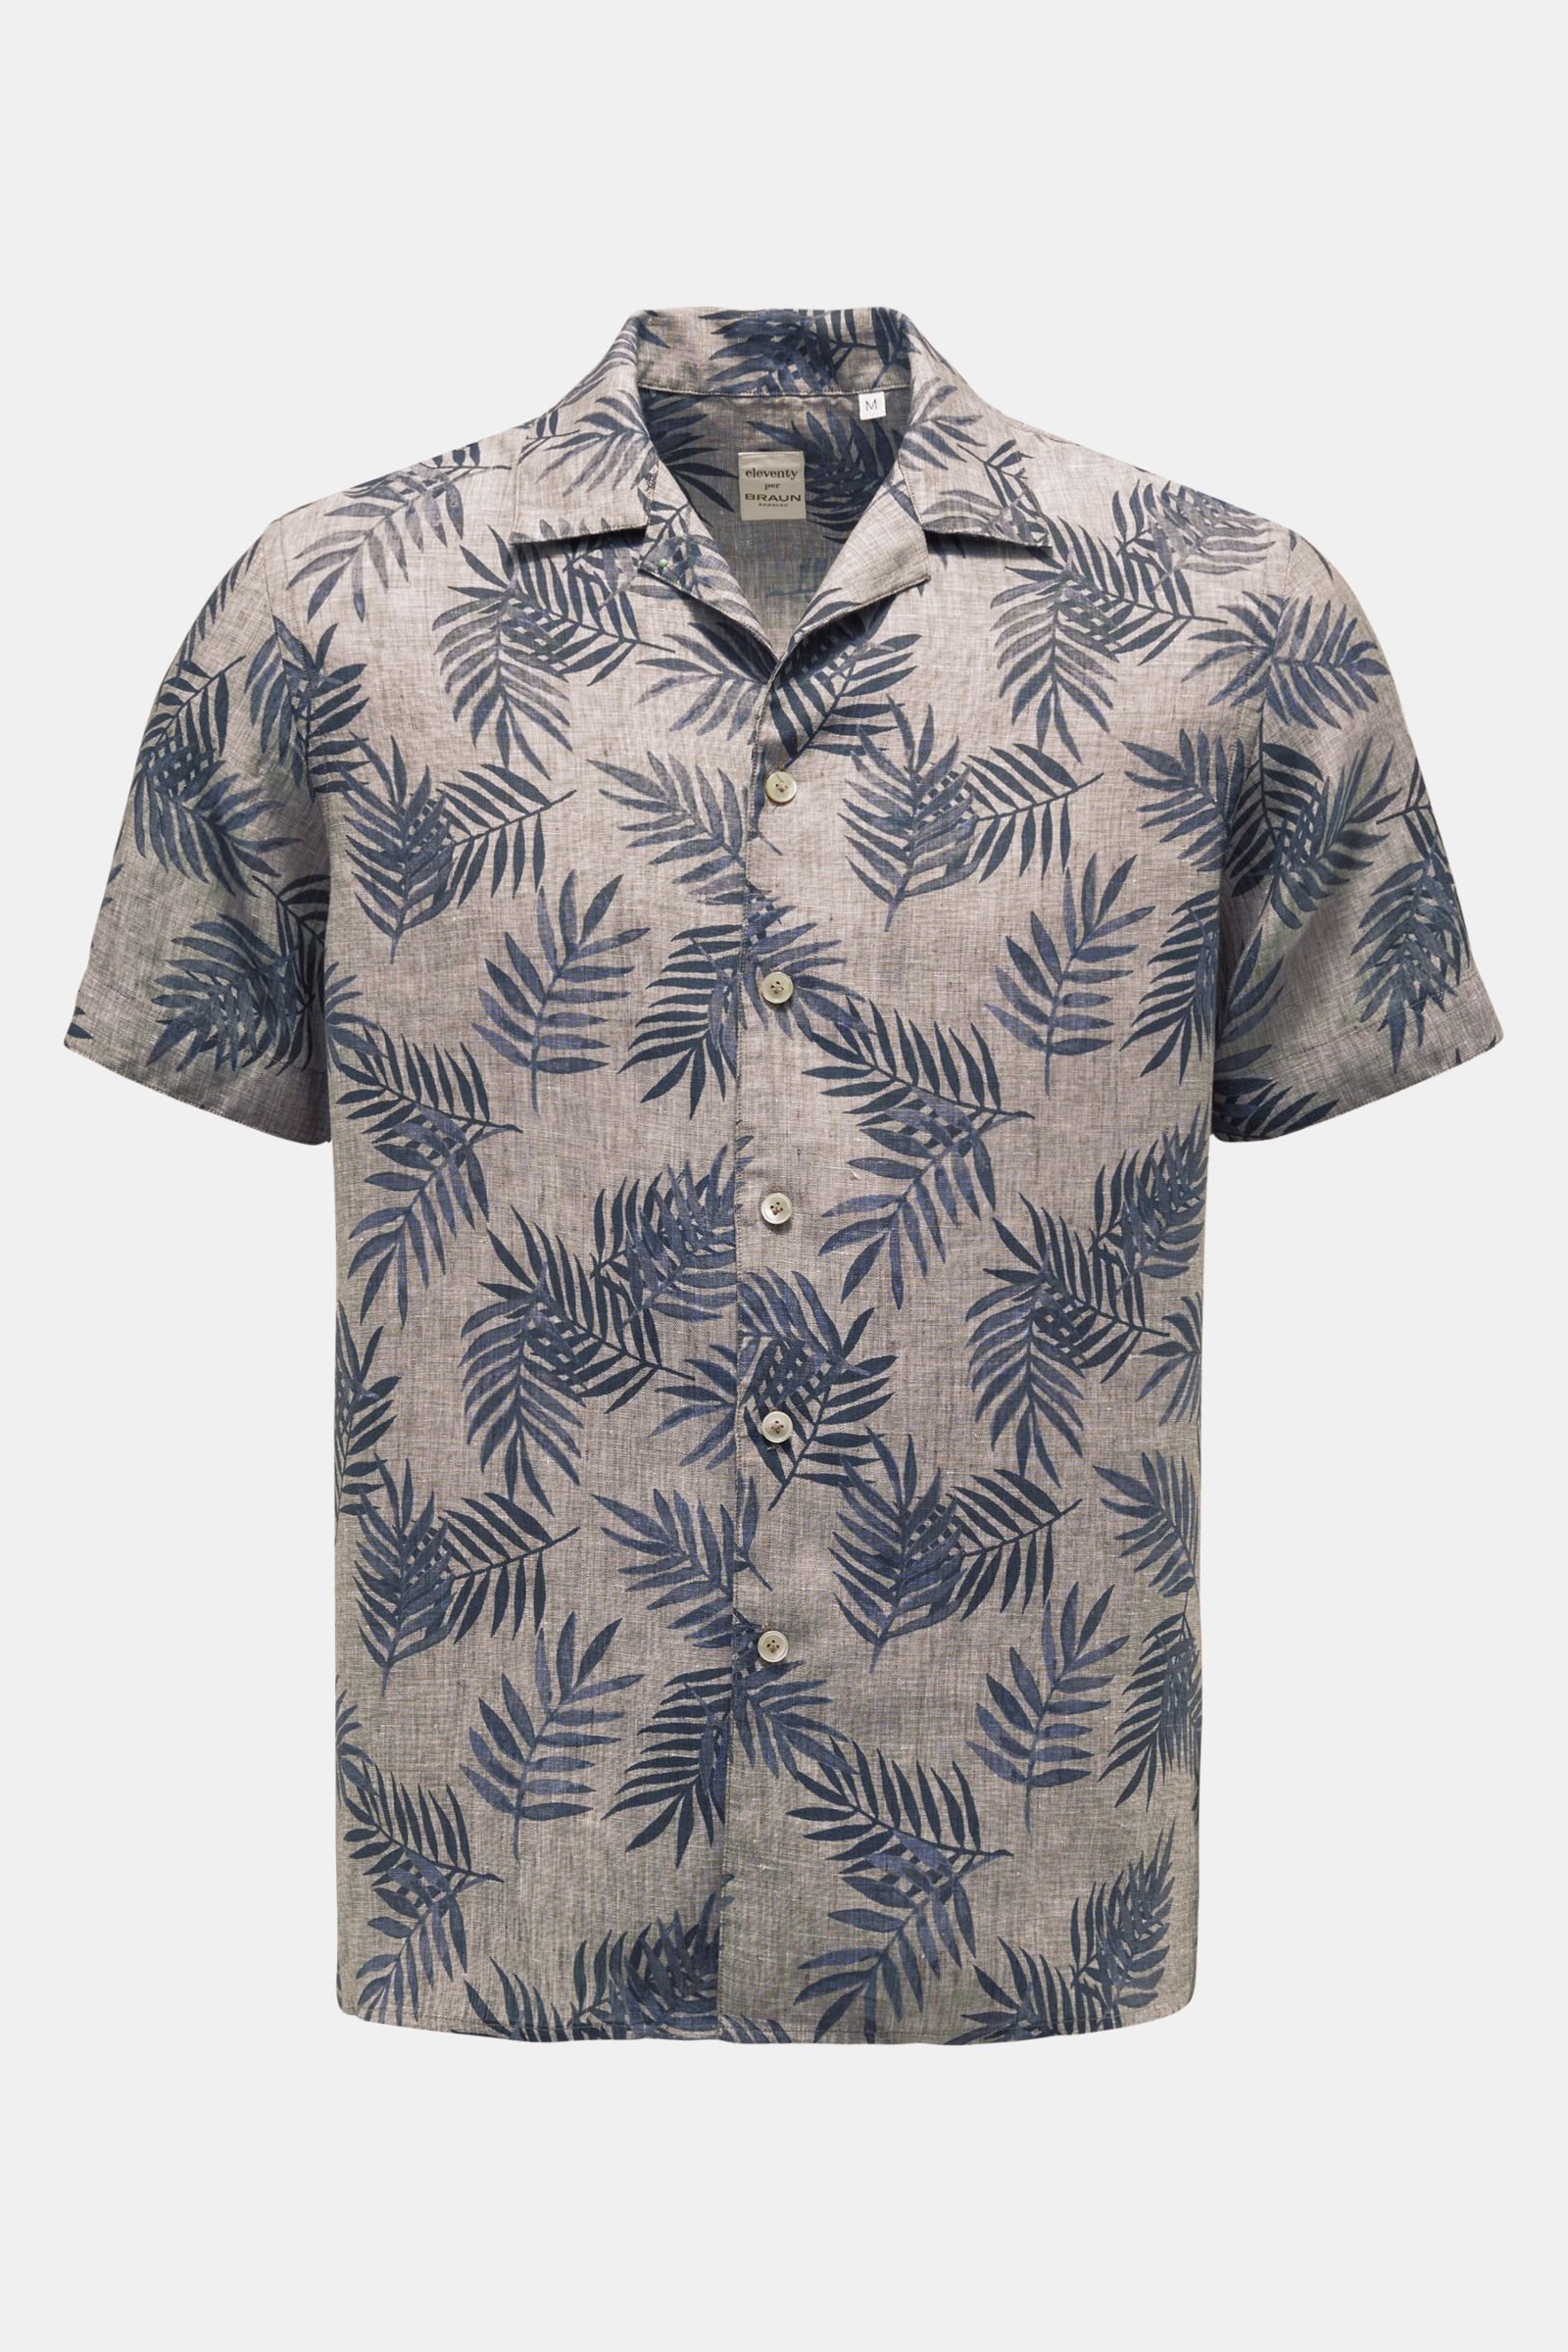 Linen short sleeve shirt Cuban collar grey-brown/navy patterned